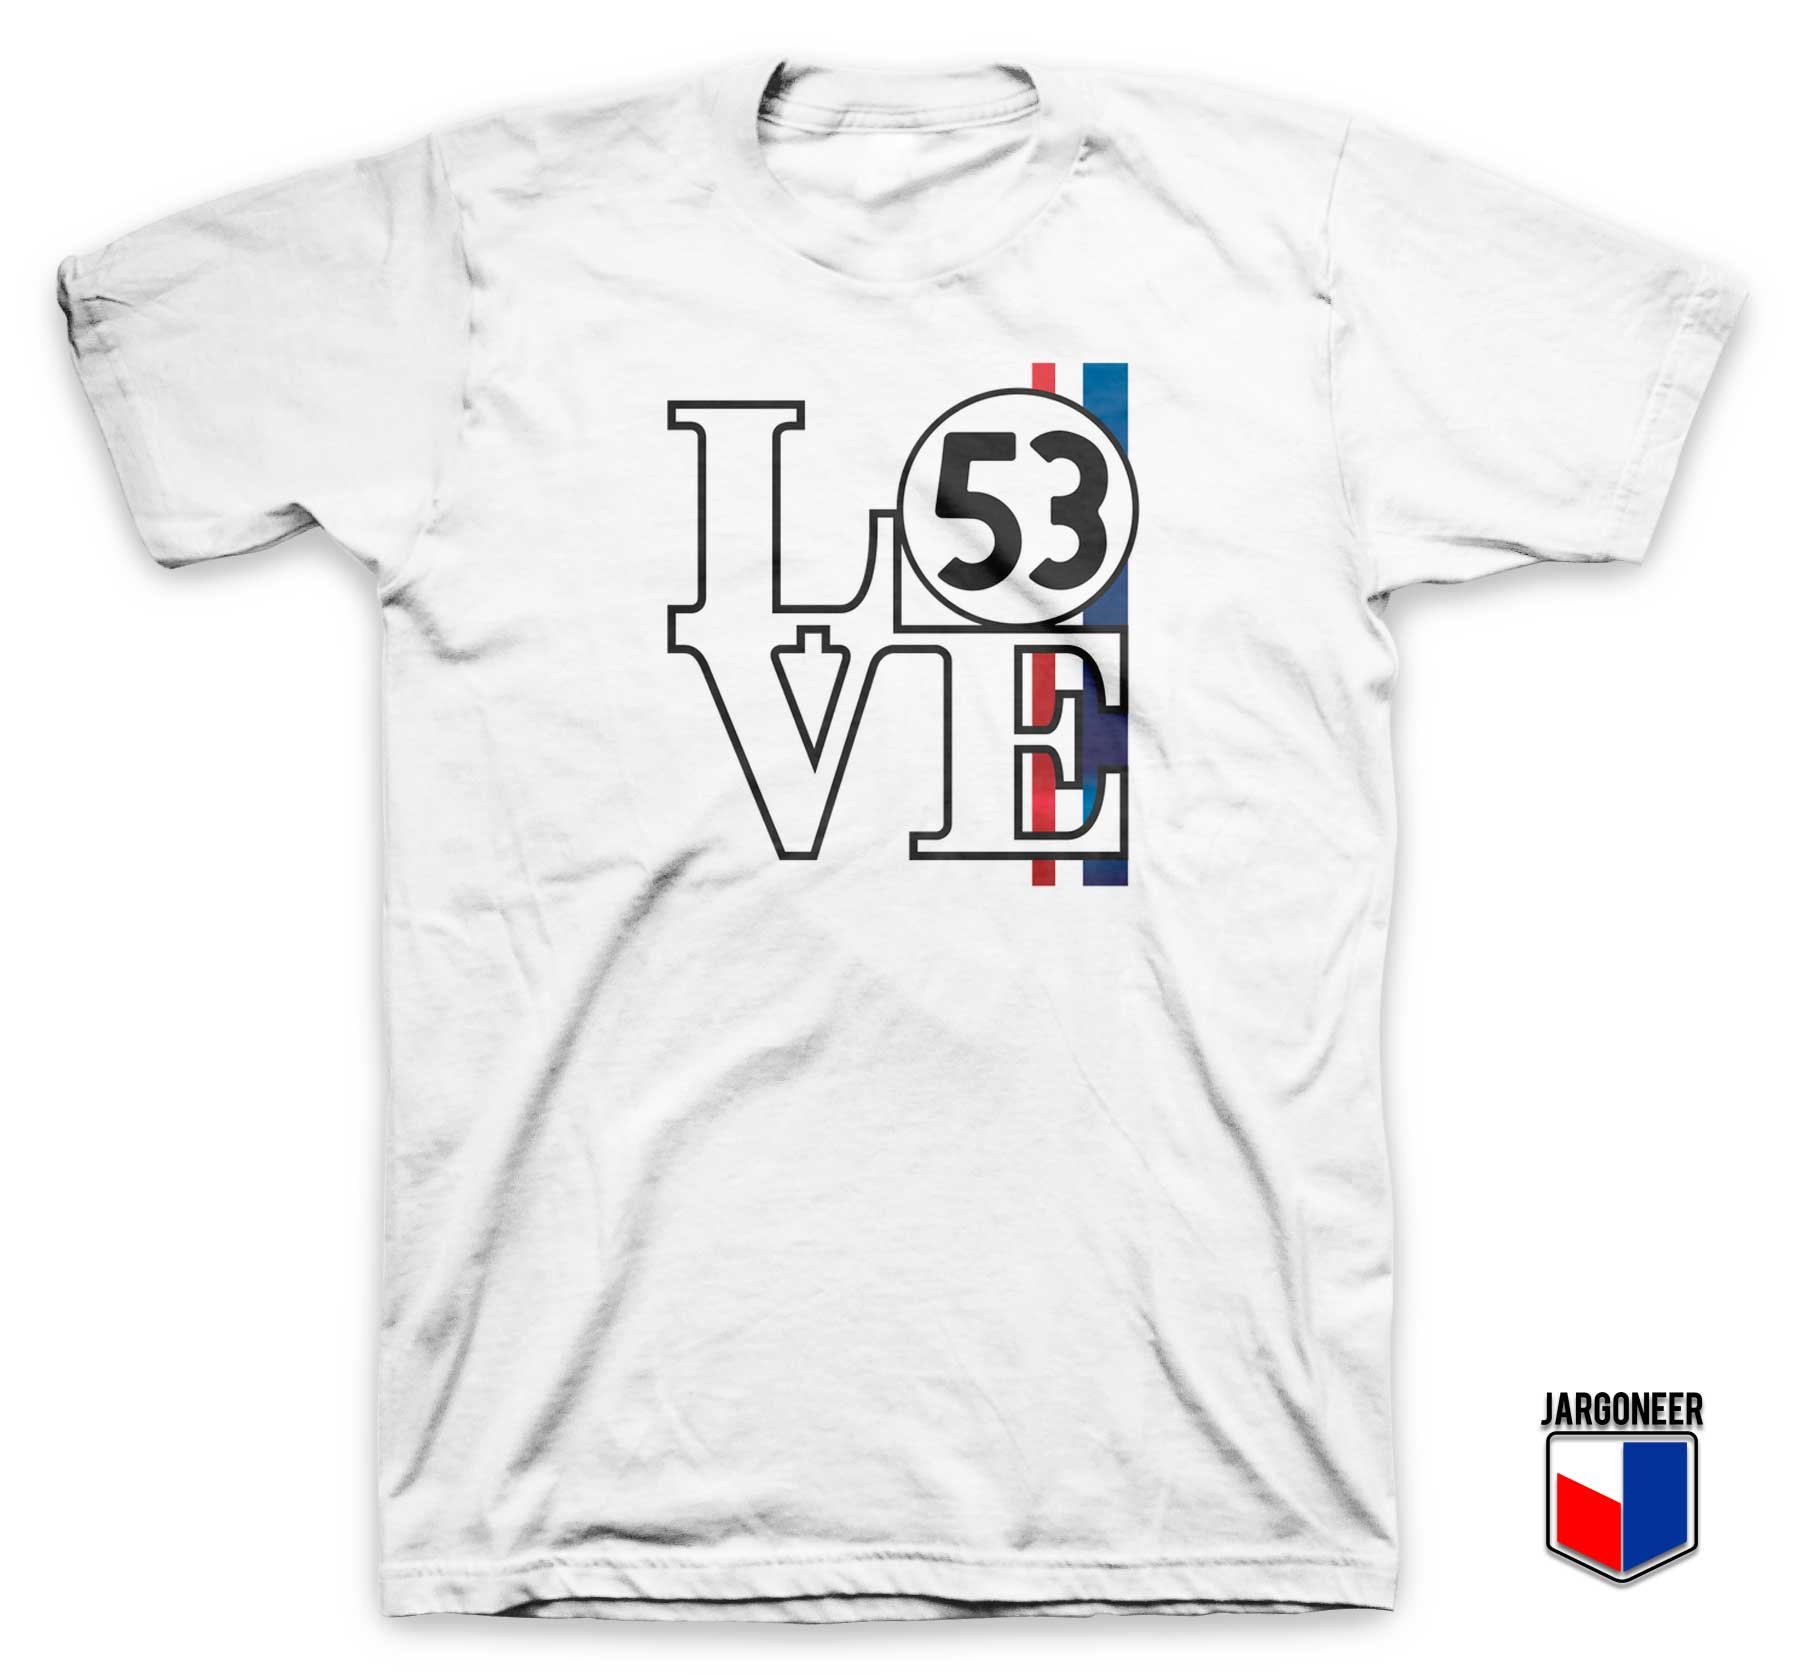 Love 53 Herbie T Shirt - Shop Unique Graphic Cool Shirt Designs